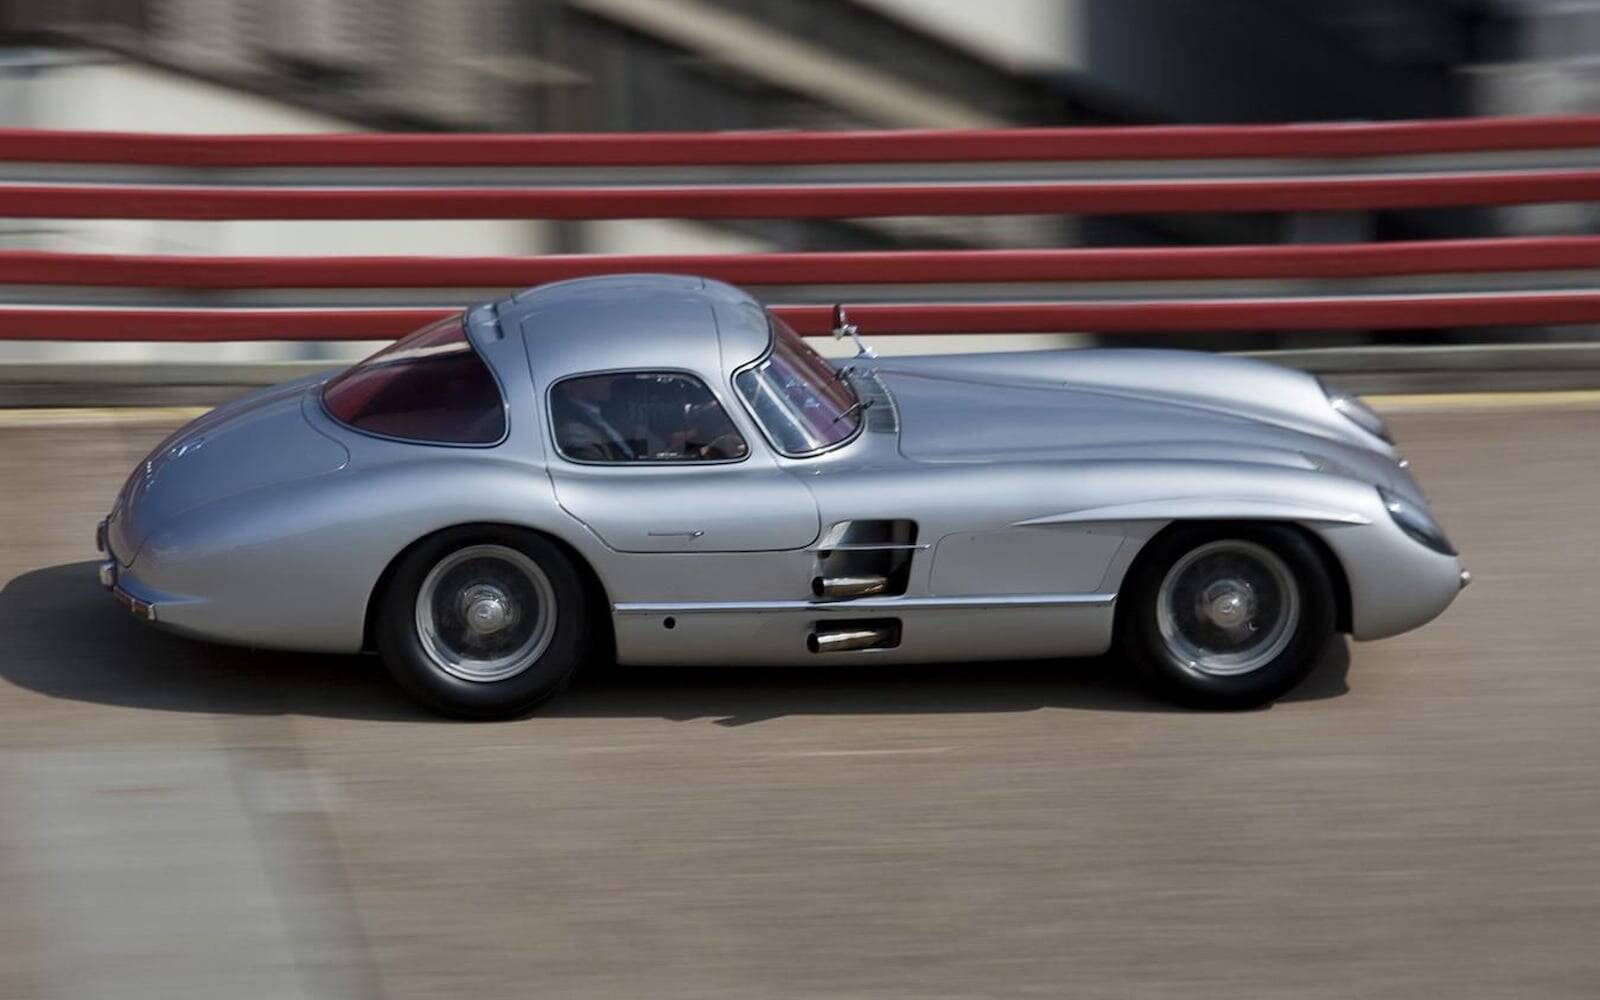 Une Mercedes-Benz Silver Arrow aurait été vendue pour 182 M$ 524030-une-mercedes-benz-300-slr-uhlenhaut-1956-aurait-ete-vendue-pour-182-millions